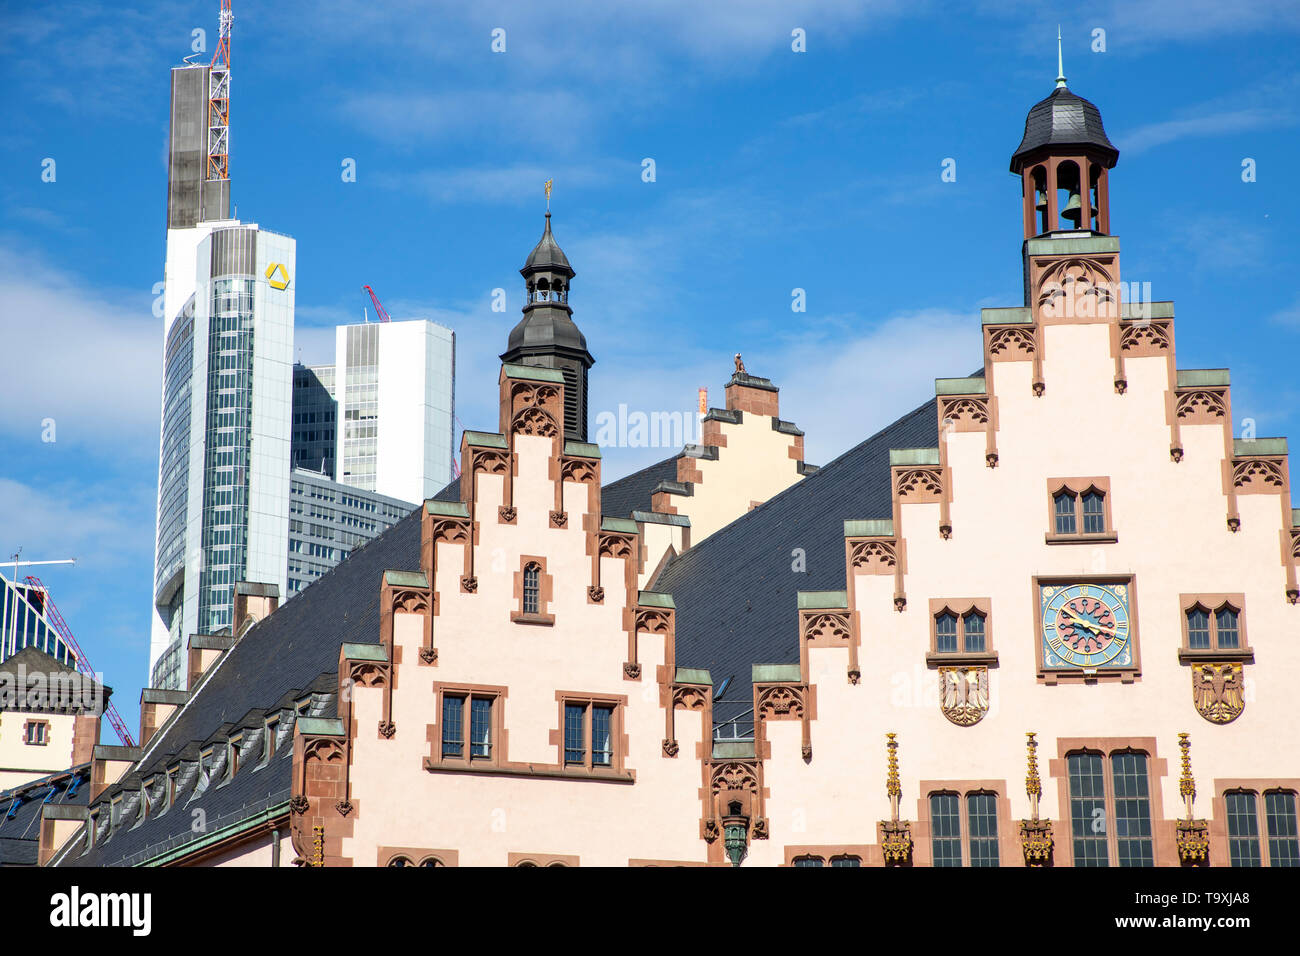 Der von Rathaus Römer, Frankfurt am Main, Wahrzeichen der Stadt, Treppengiebelfassade, hinten, modernes Bankhochaus der Commerzbank, Foto de stock